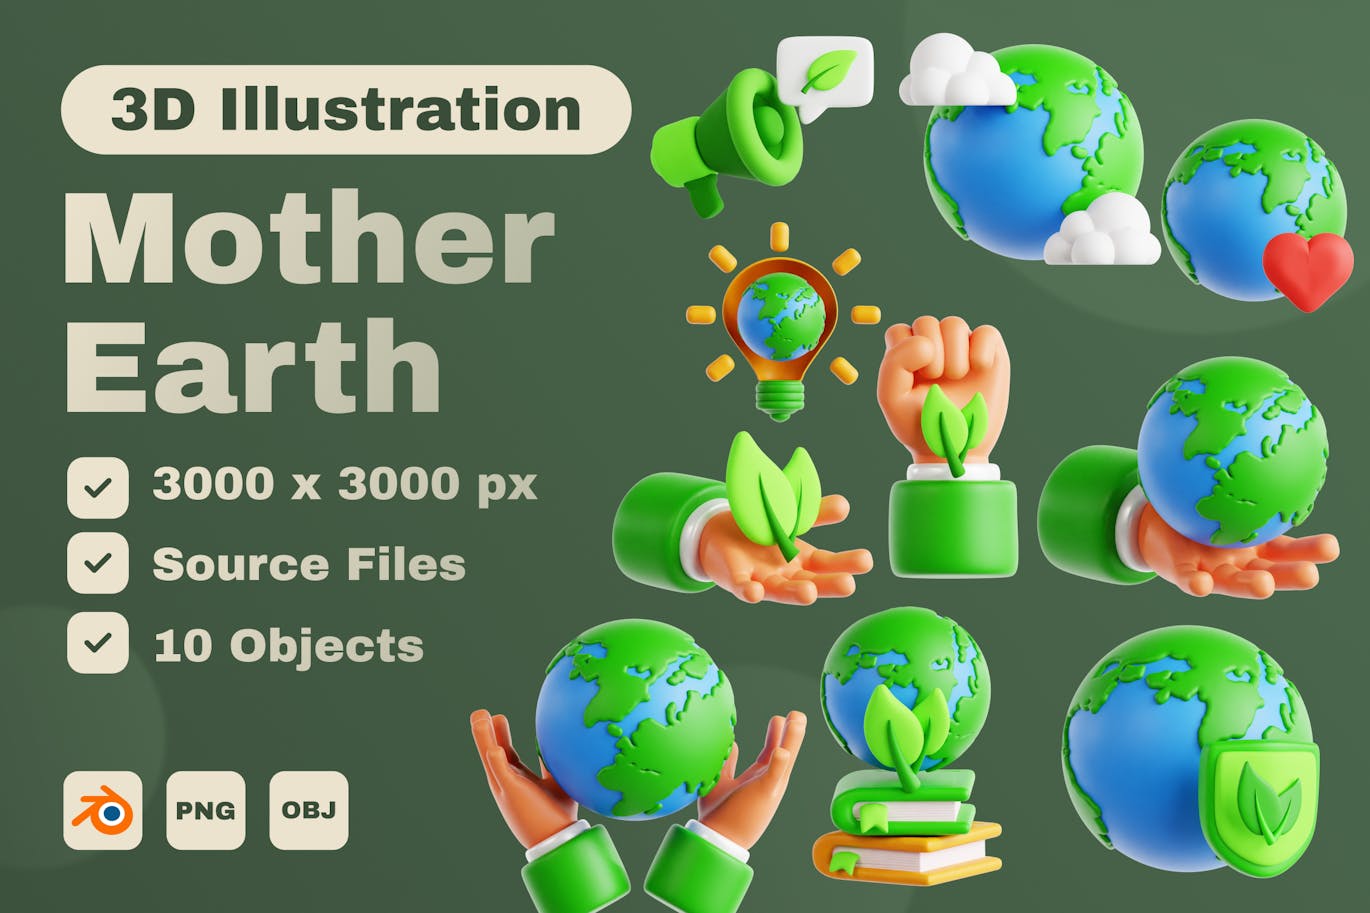 地球母亲 3D 图标集 (PNG,OBJ.BLEND)